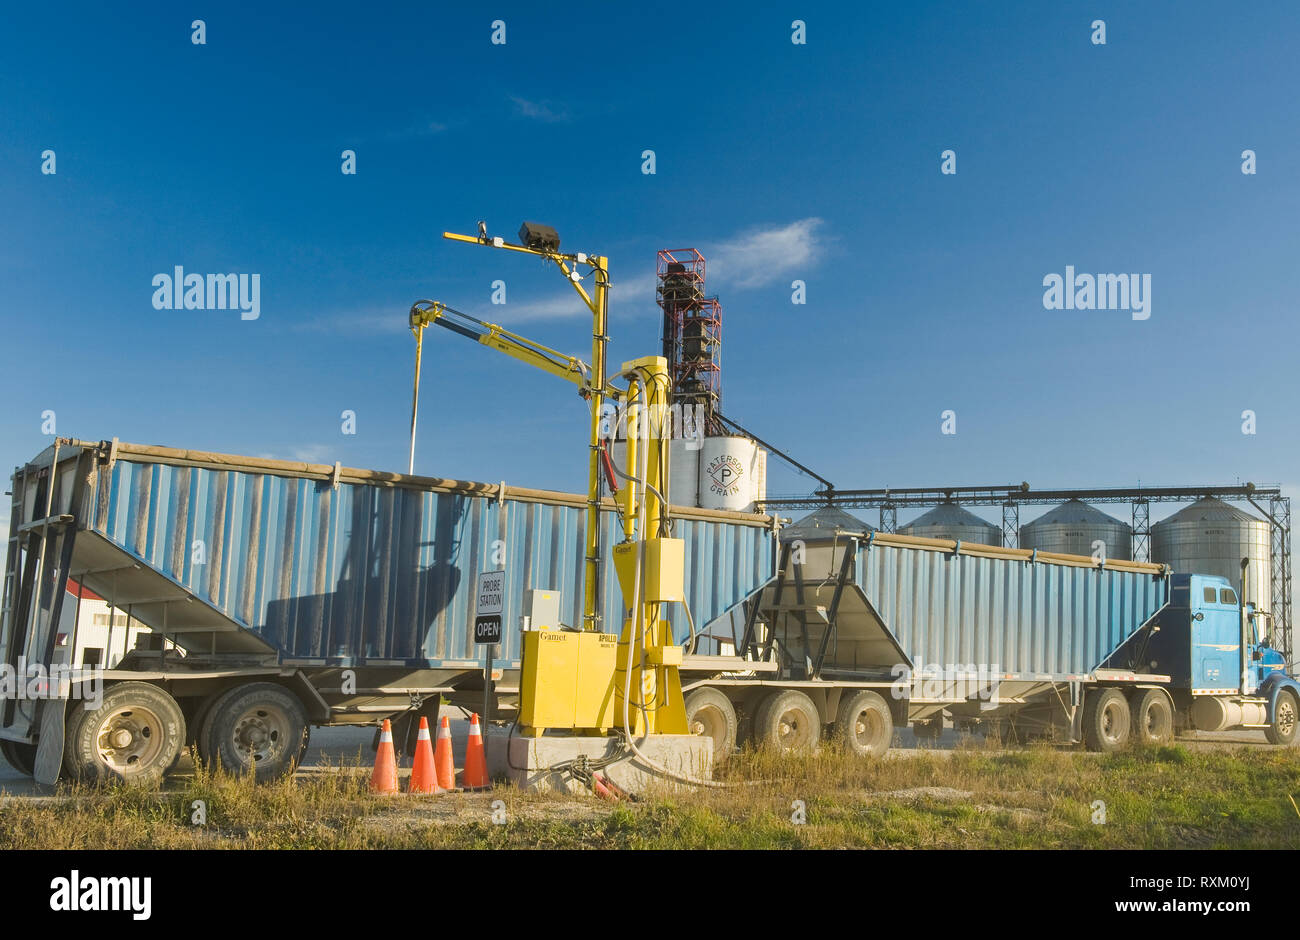 Eine Feuchtigkeit Sonde prüft eine Last von Sojabohnen in einer Farm LKW Transport der Ernte zu einem inländischen Terminal, in der Nähe von Winnipeg, Manitoba, Kanada Stockfoto